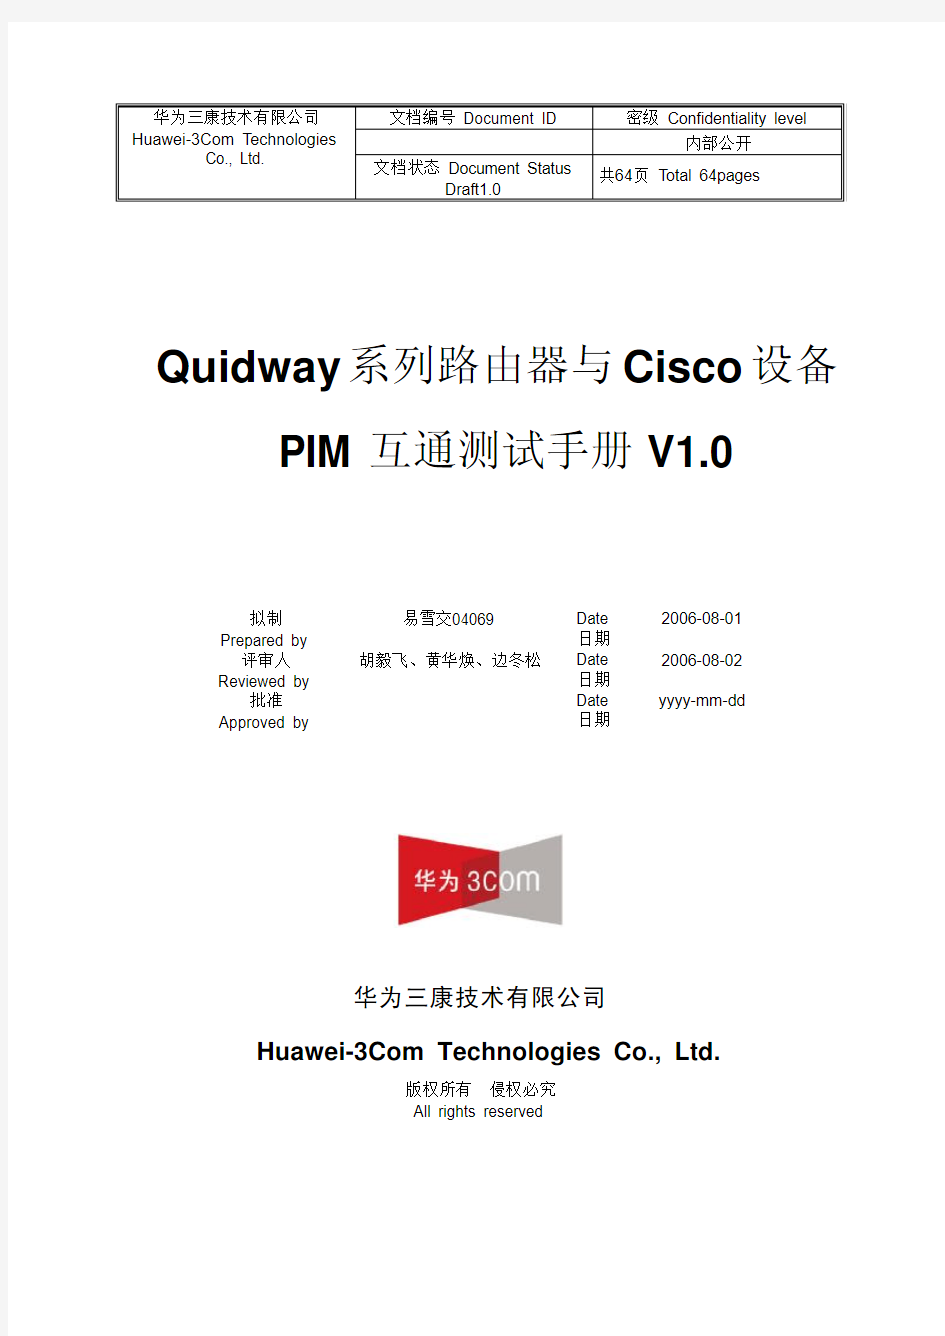 Quidway系列路由器与Cisco设备 PIM互通测试手册V1_0